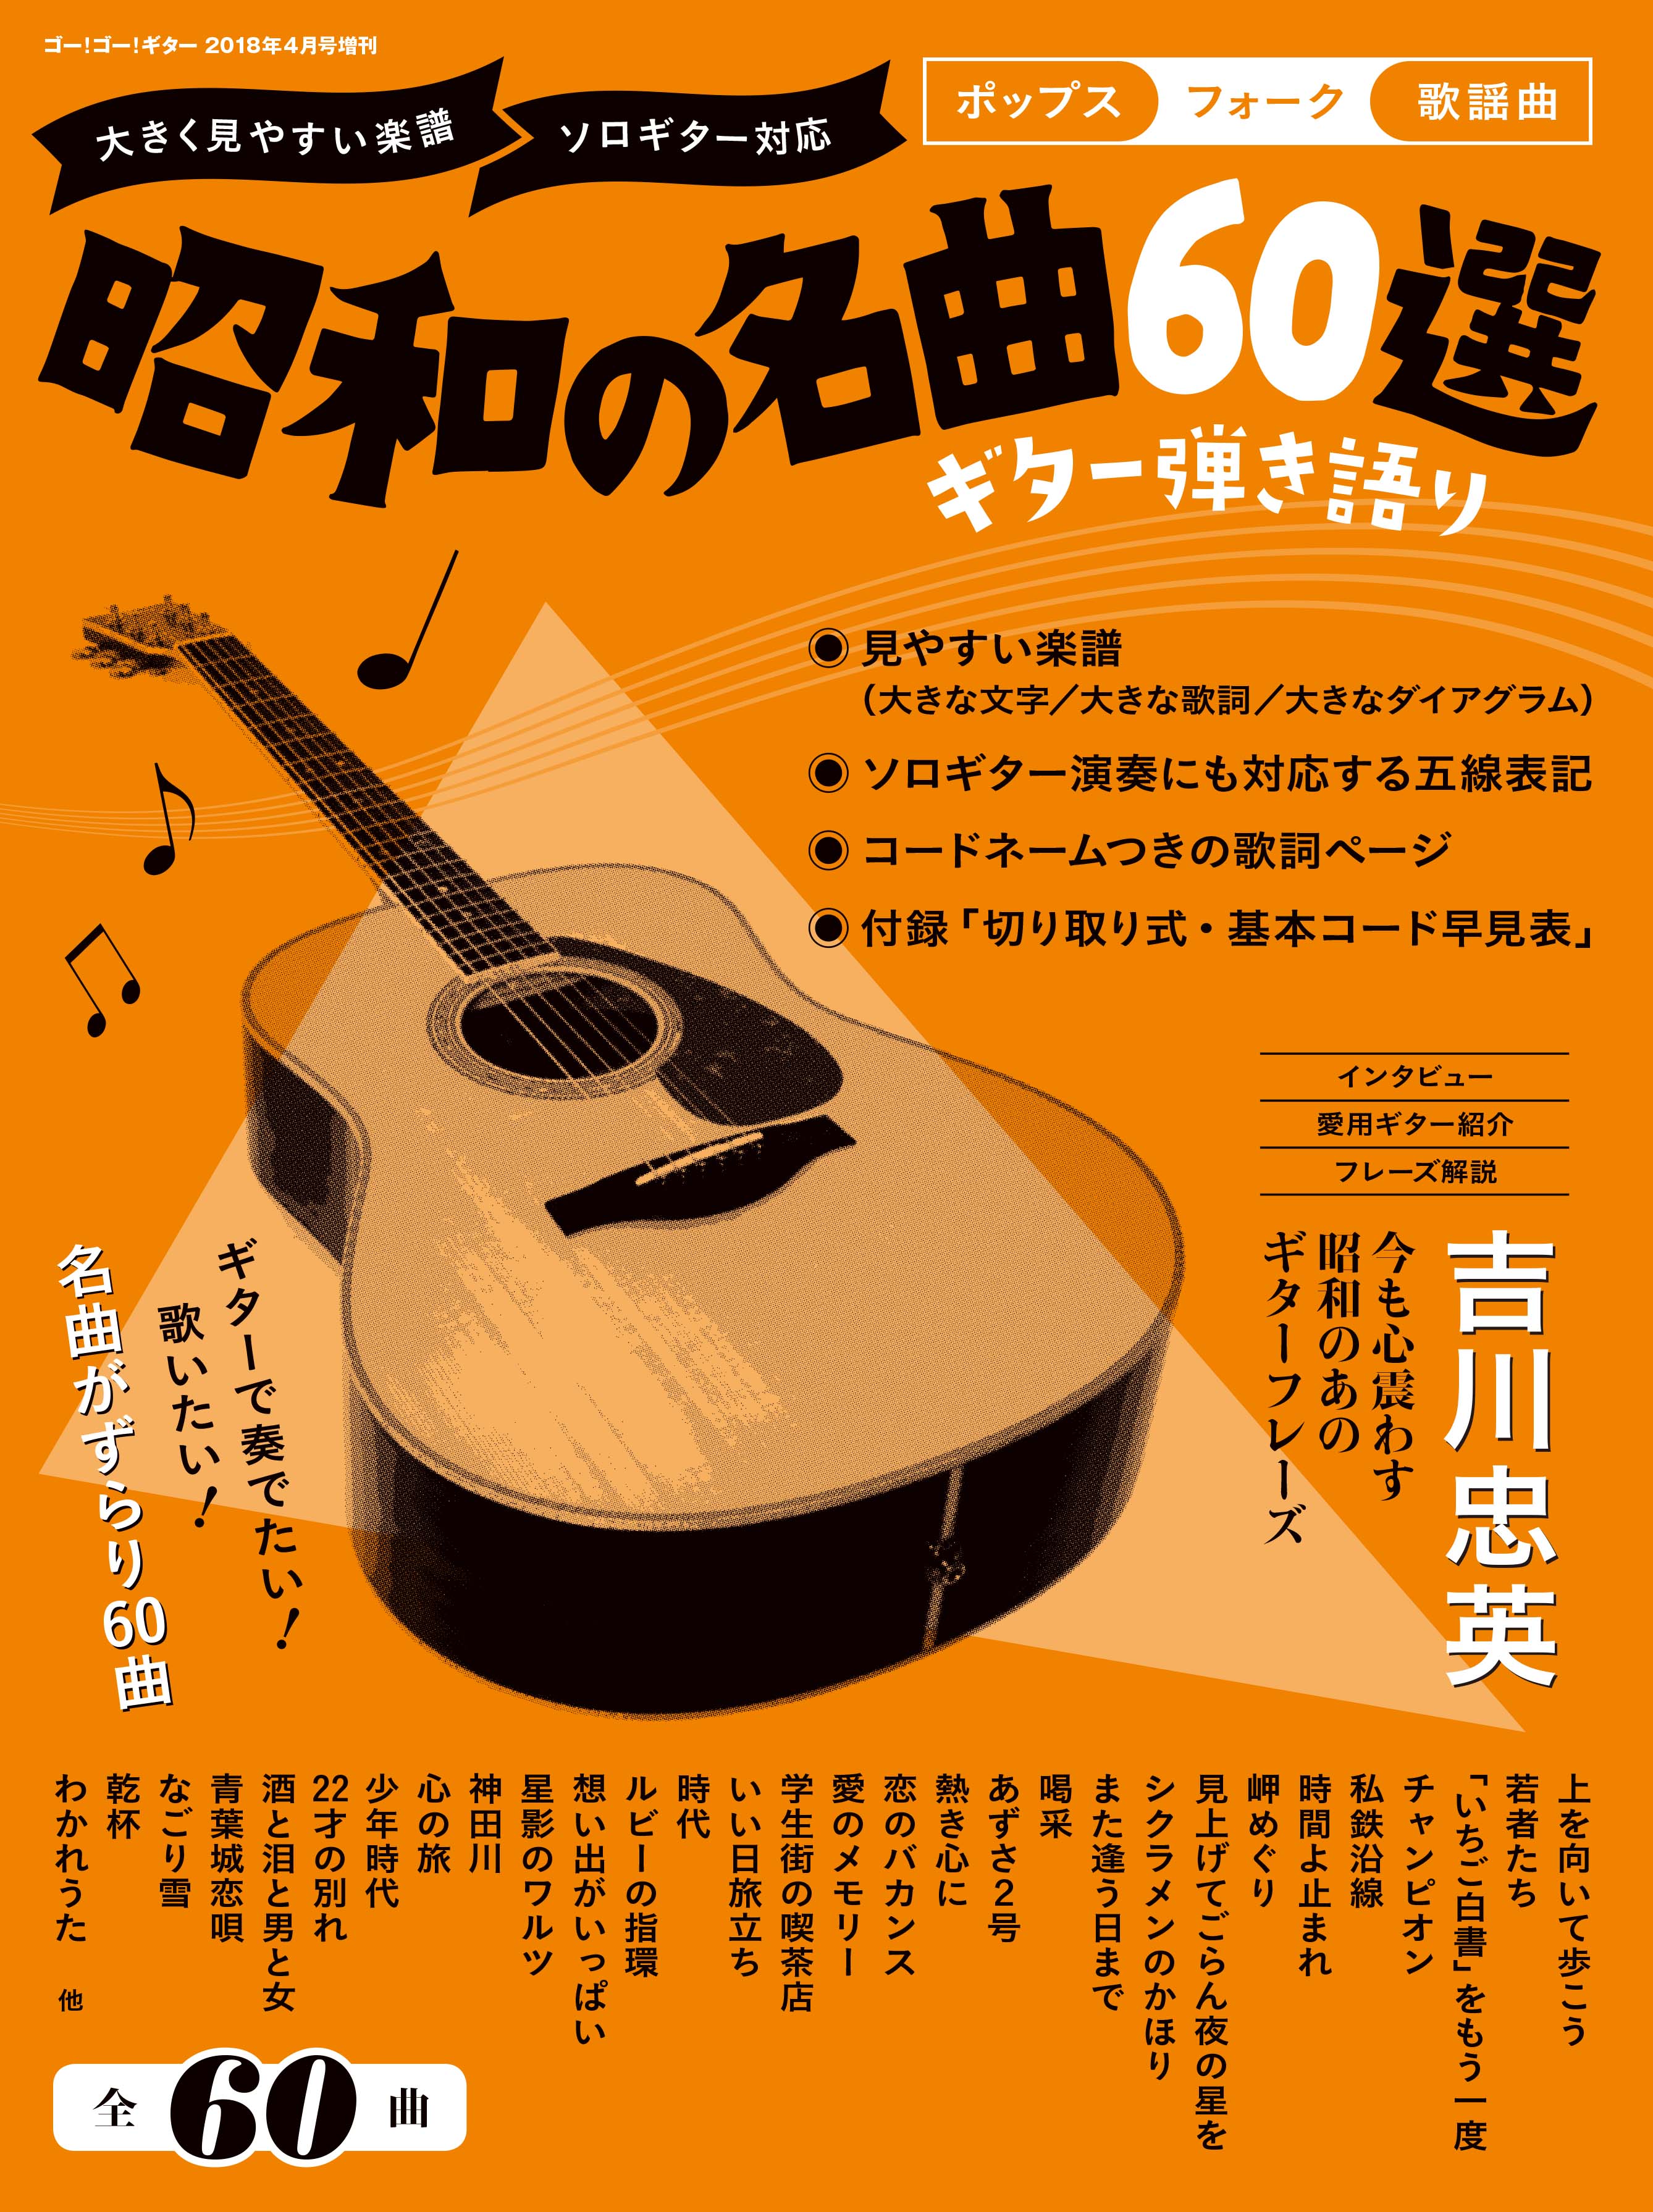 Go Go Guitar18年4月号増刊 ギター弾き語り 昭和の名曲60選 3月17日発売 ヤマハミュージックエンタテインメントホールディングスのプレスリリース